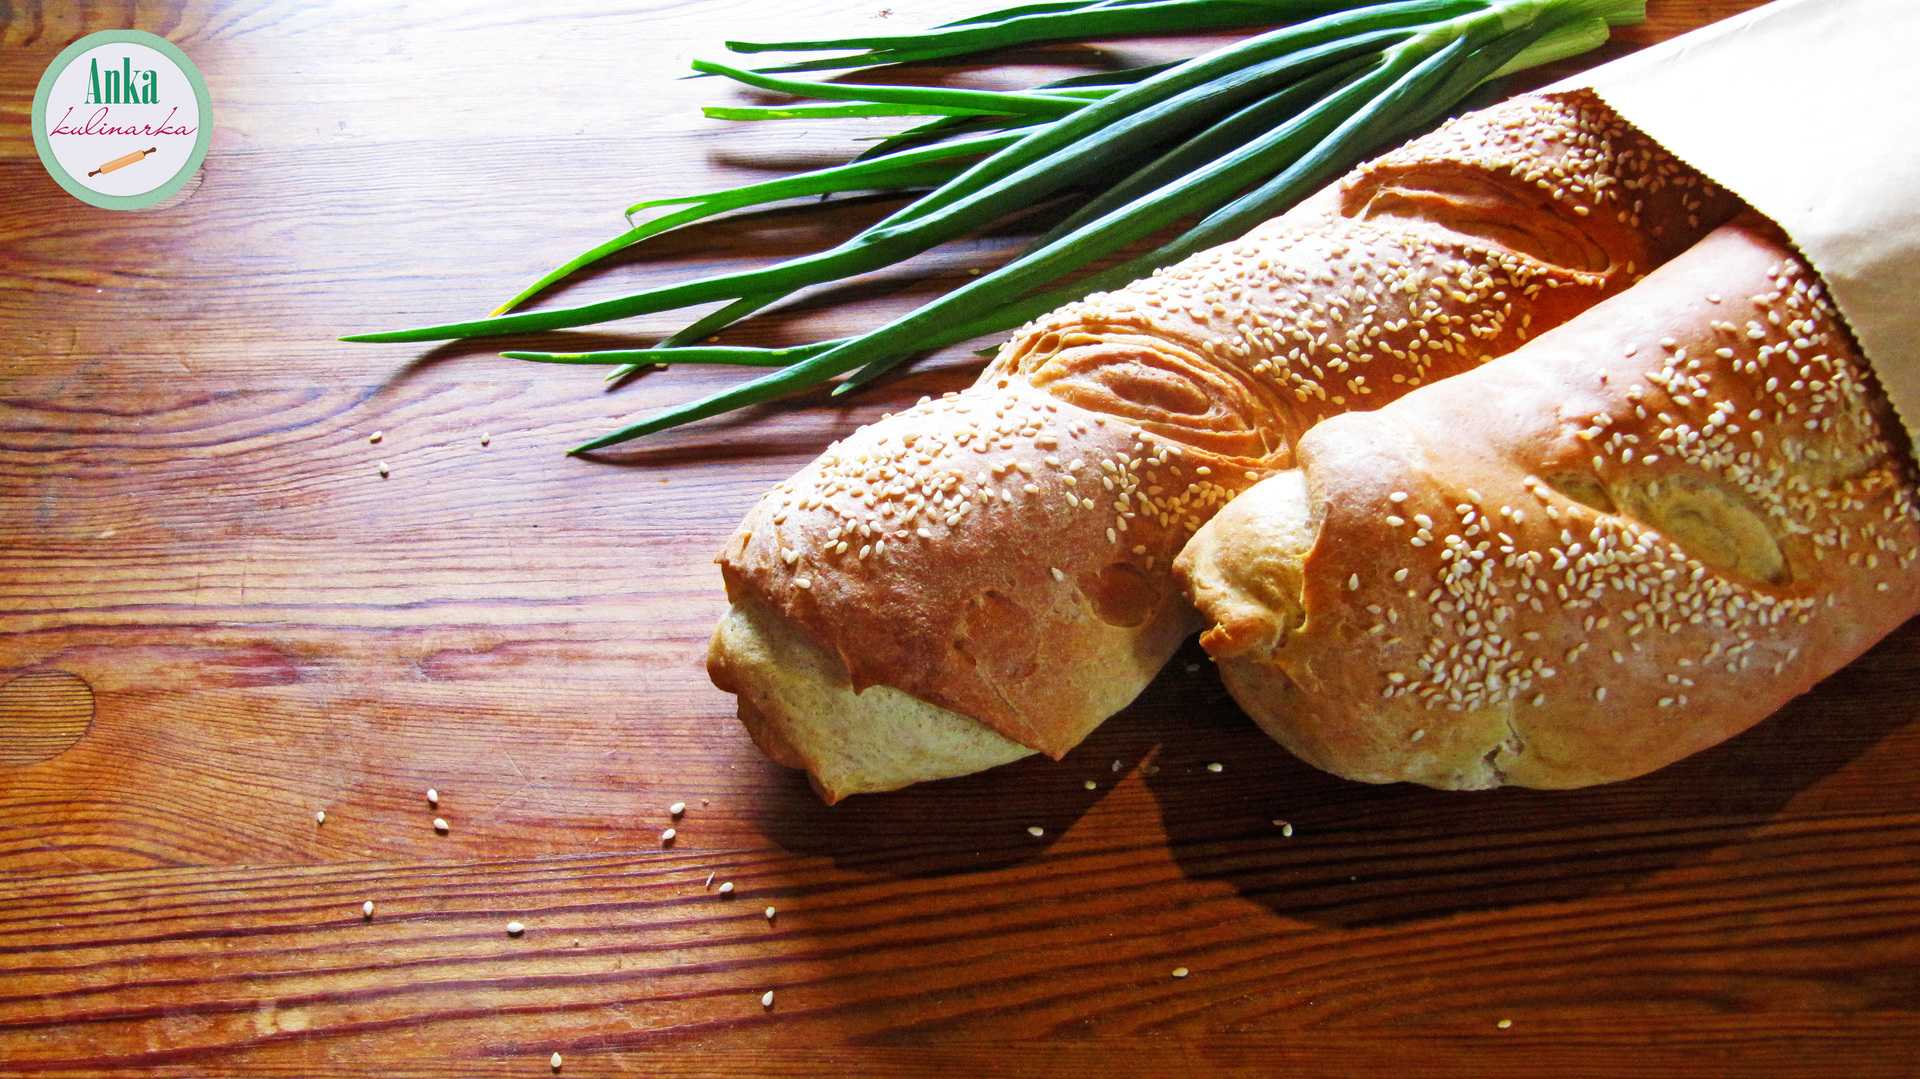 Домашний хлеб - это не только формовые кирпичики и подовые батоны, булки, горбушки или караваи